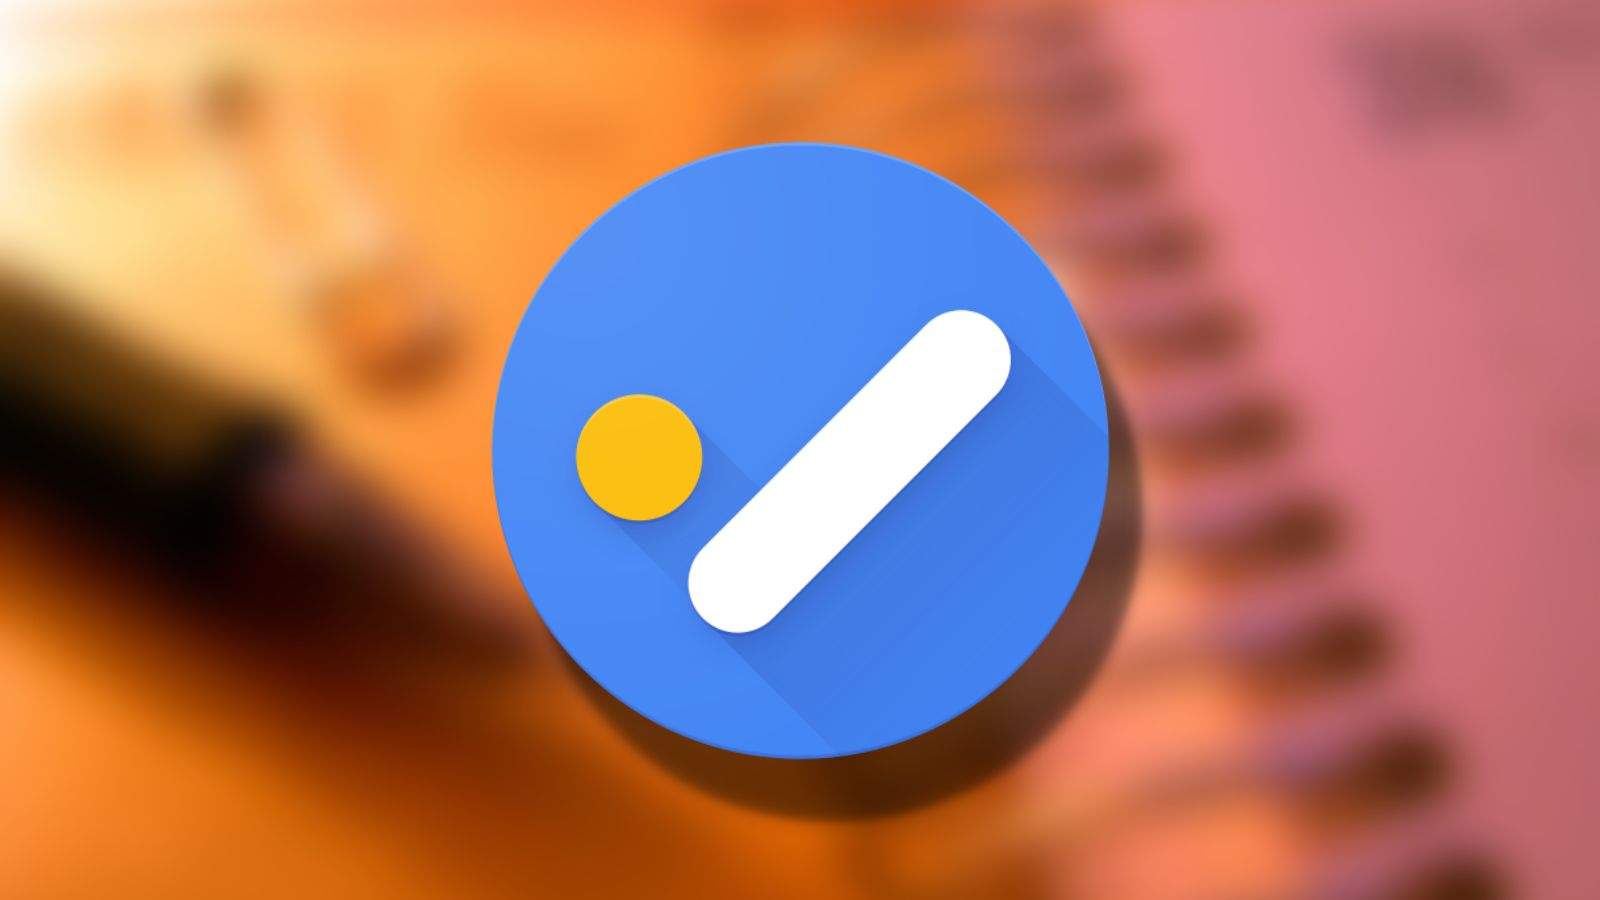 Ícones do Google Play ganham novo design